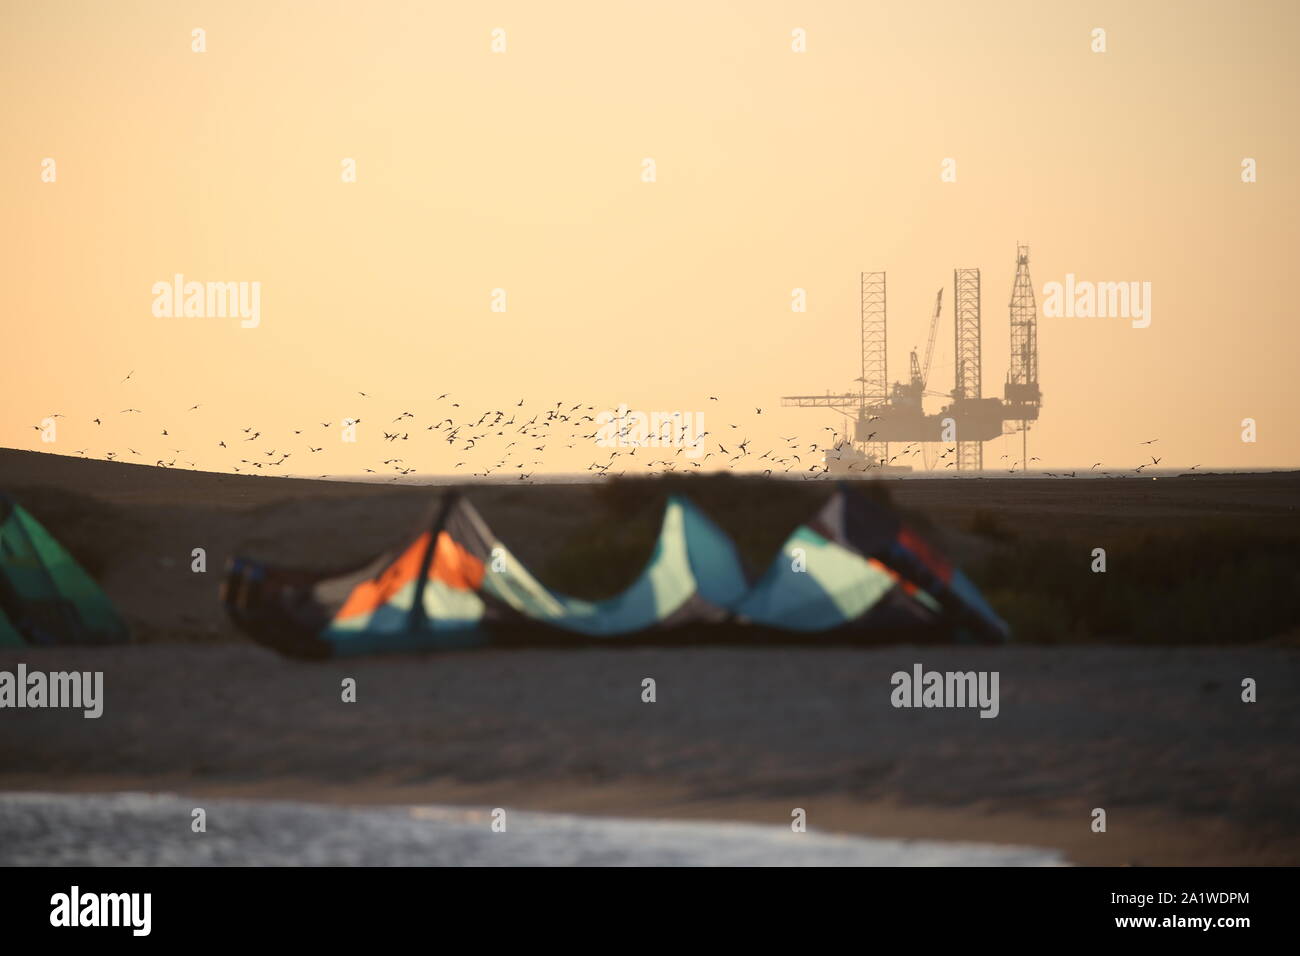 Seltsame Gegenüberstellung zwischen Kitesurfgeräten, einer Vogelschar und einem Bohrinsel bei Sonnenuntergang in Ägypten Stockfoto